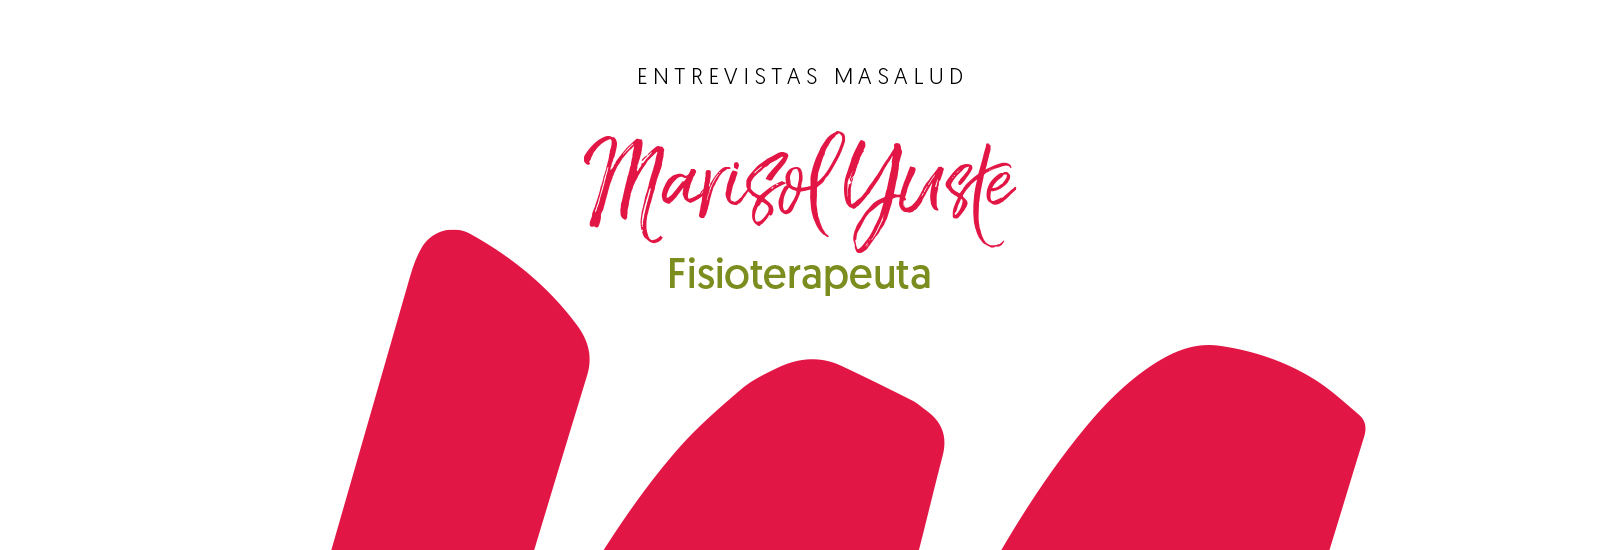 Más Masalud, Marisol Yuste, Fisioterapeuta